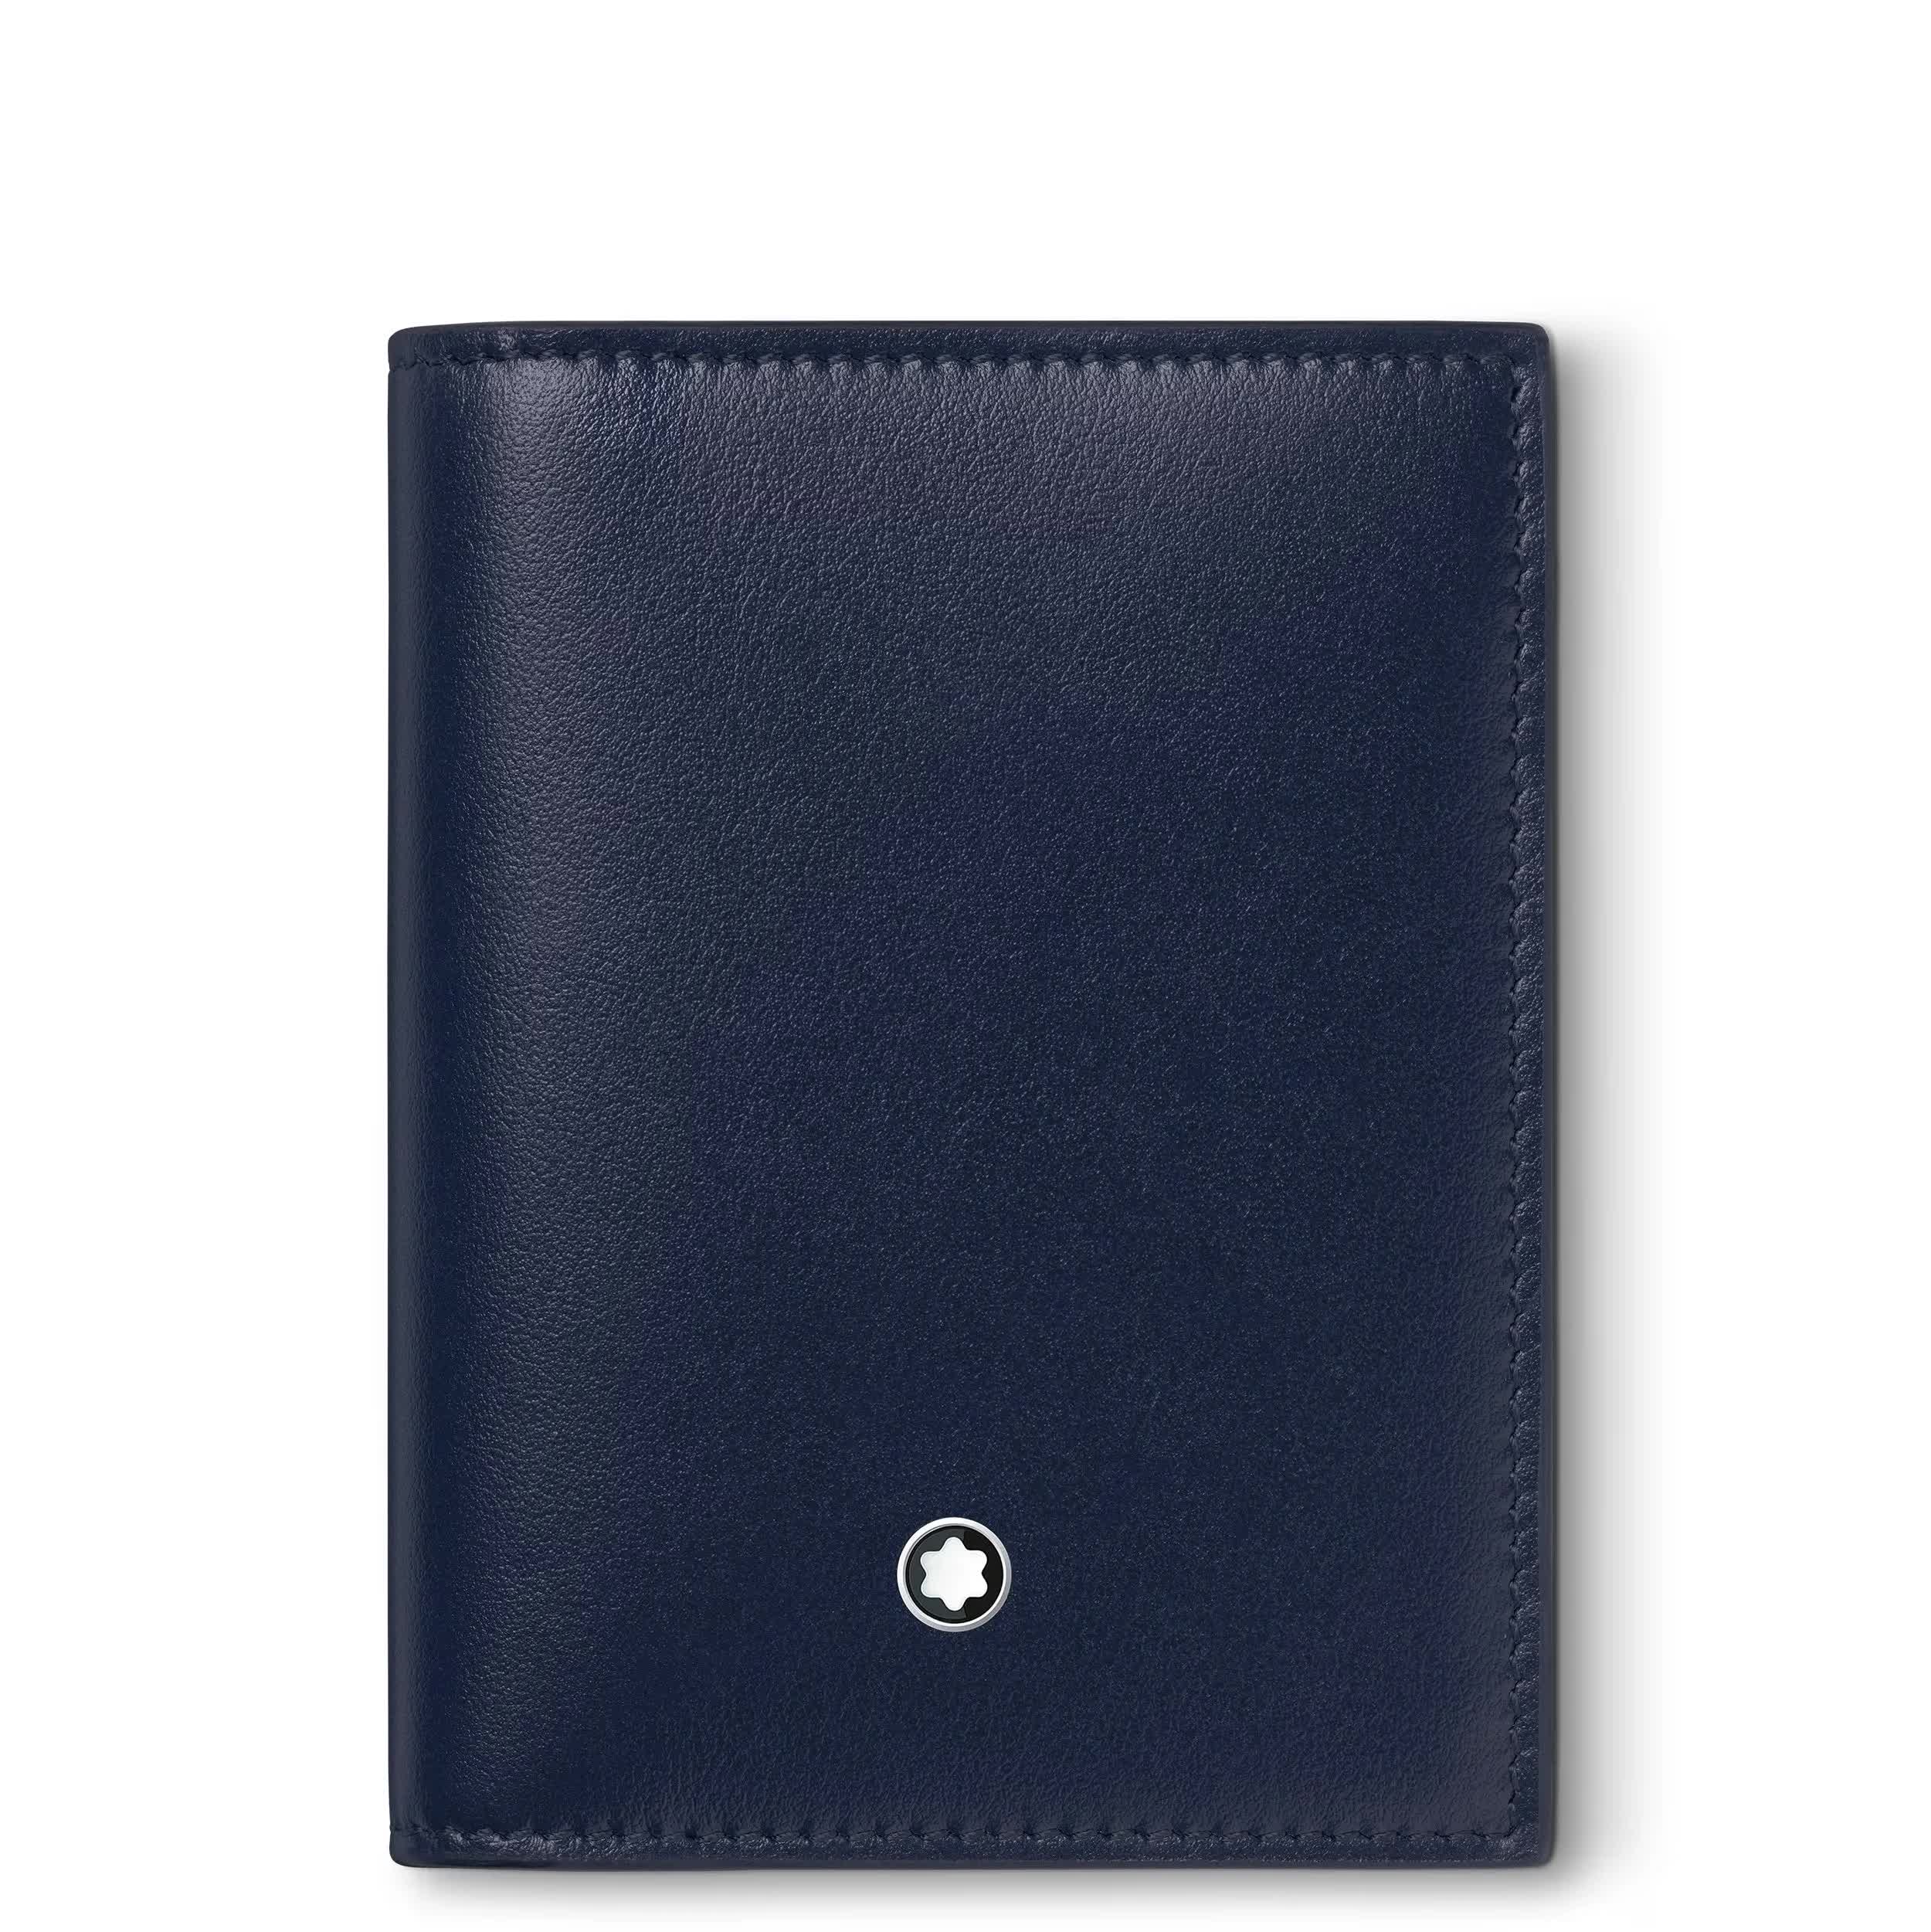 Montblanc portafoglio portacarte 4 tasche blu - 131693